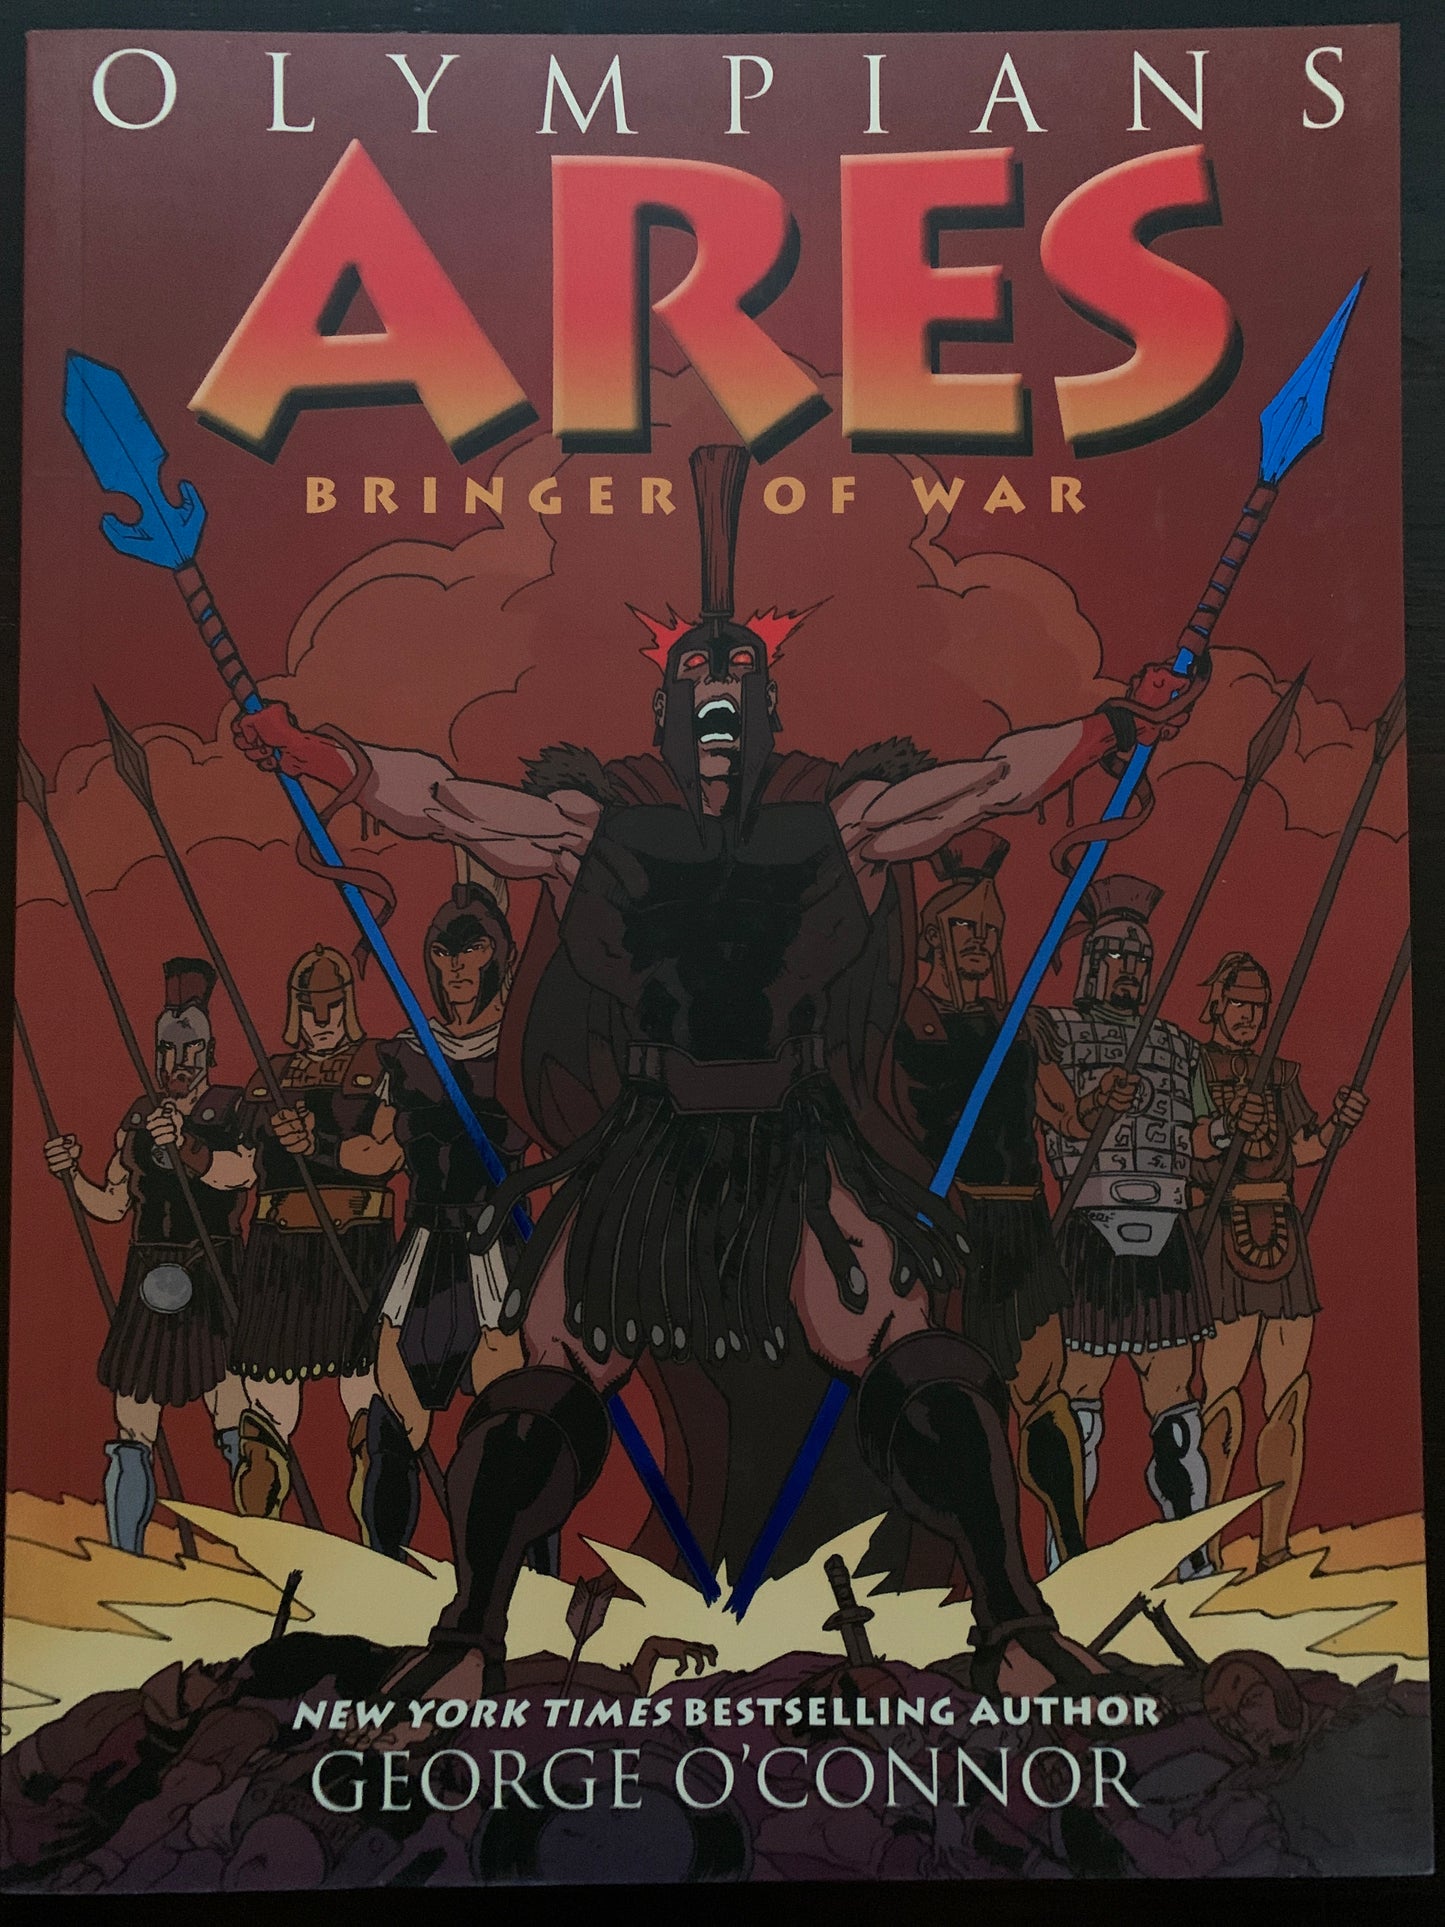 Ares: Bringer of War (Olympians Vol 7)